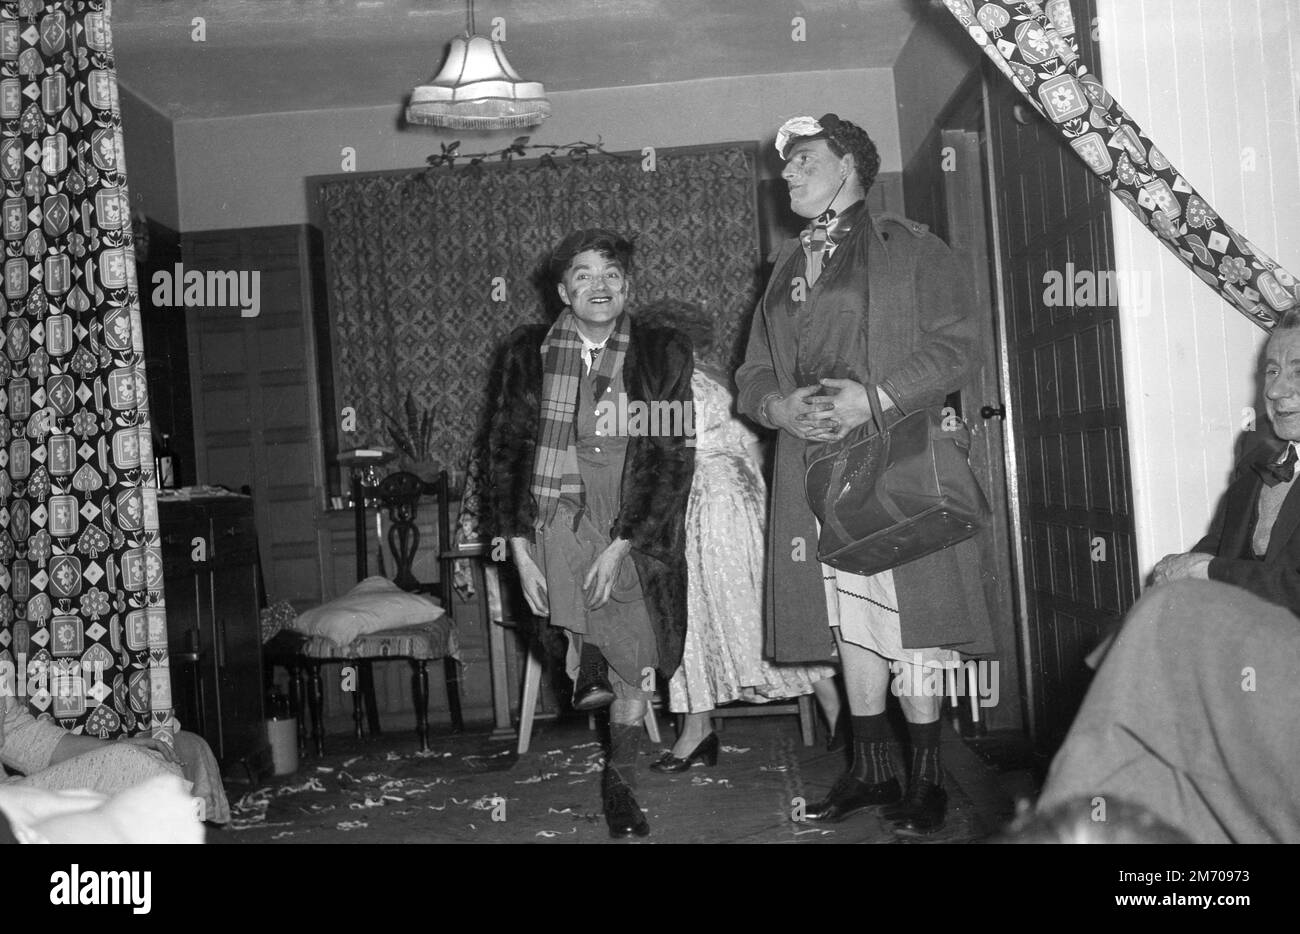 1950s, storico, divertimento festa a casa, in una stanza anteriore, due uomini in drag, vestito come donne, divertente membri della famiglia, Inghilterra, Regno Unito. Foto Stock